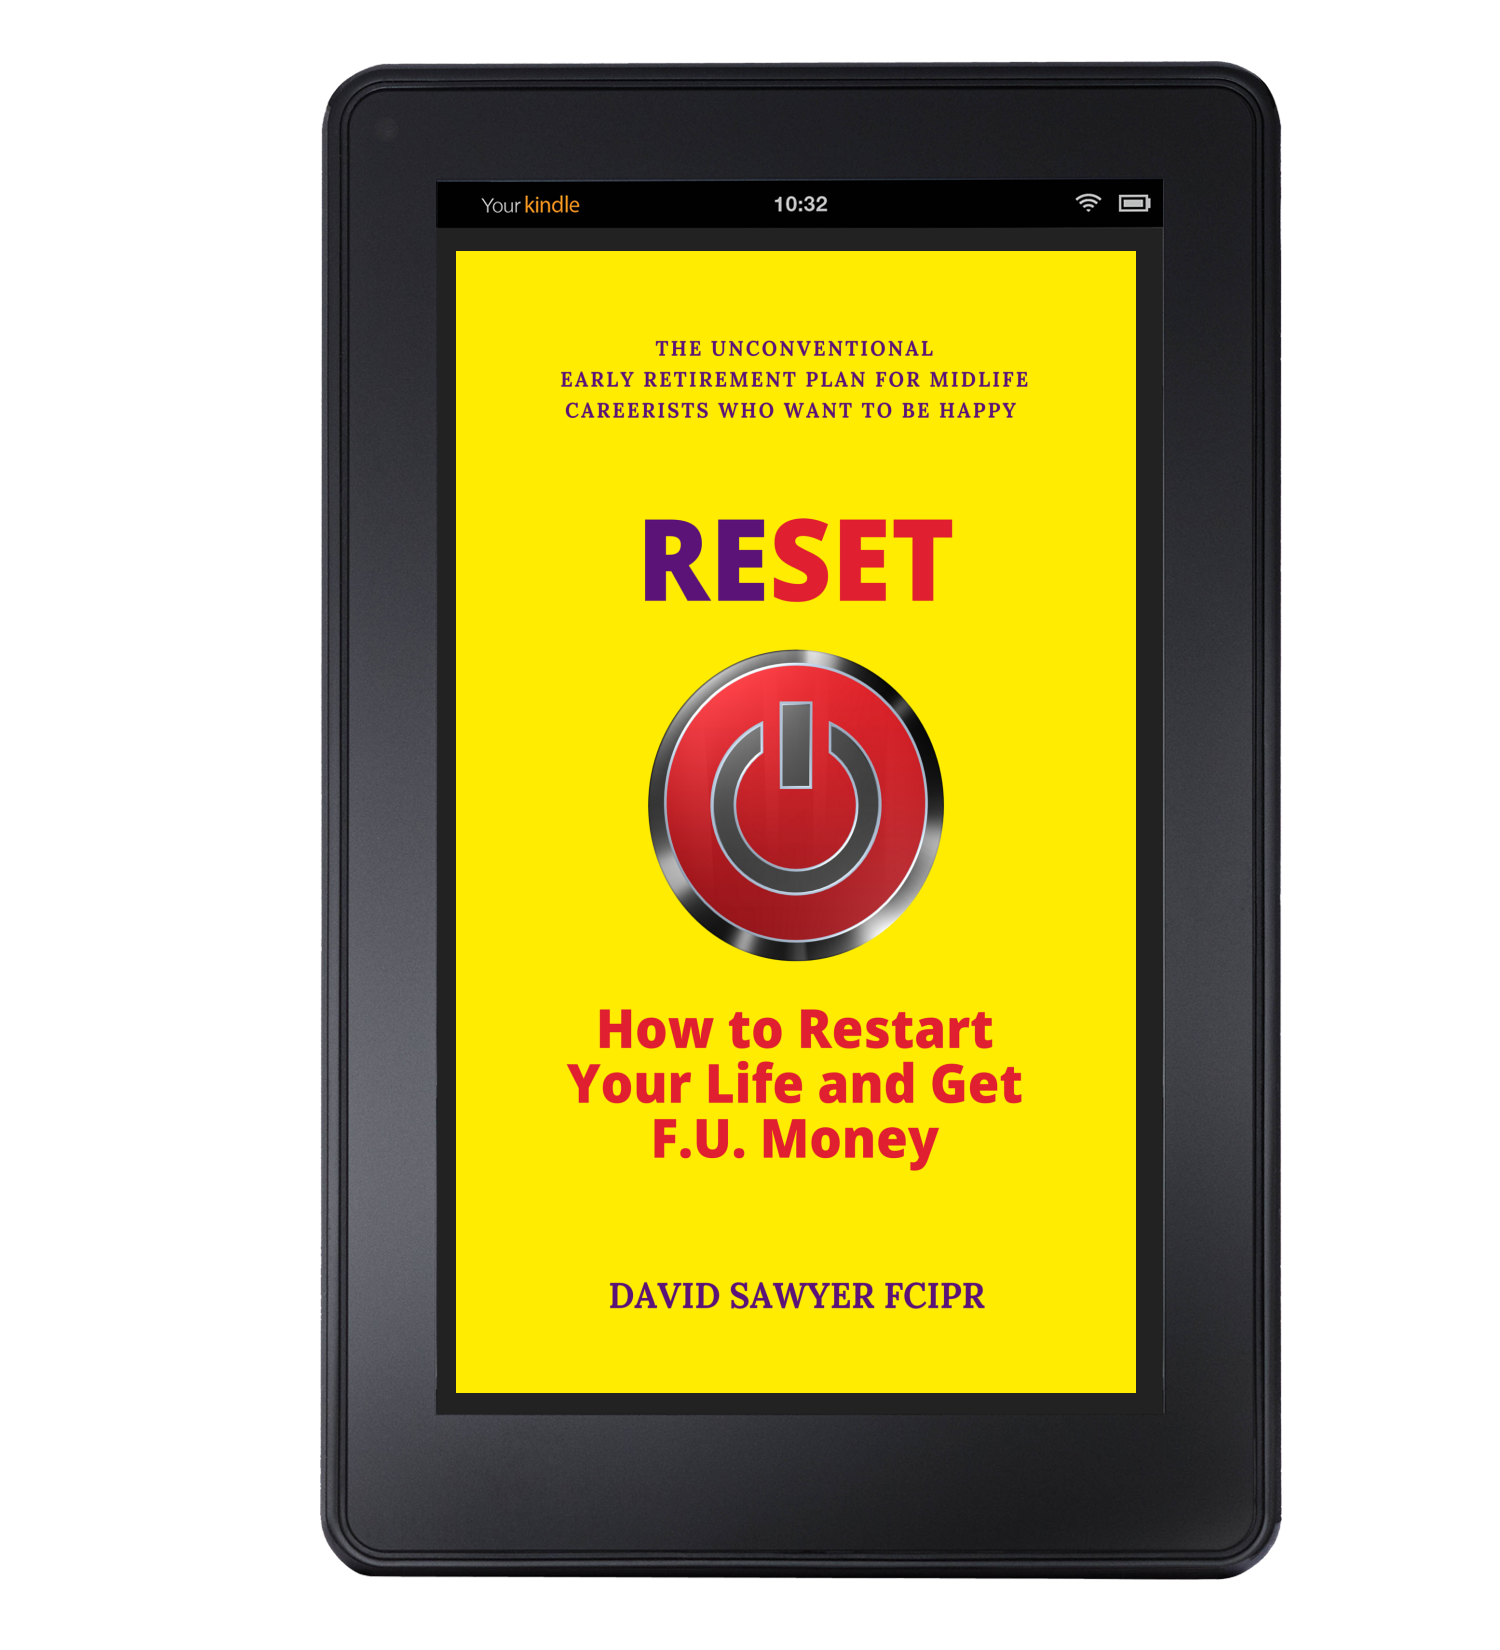 RESET Kindle self-help Zude PR David Sawyer Glasgow